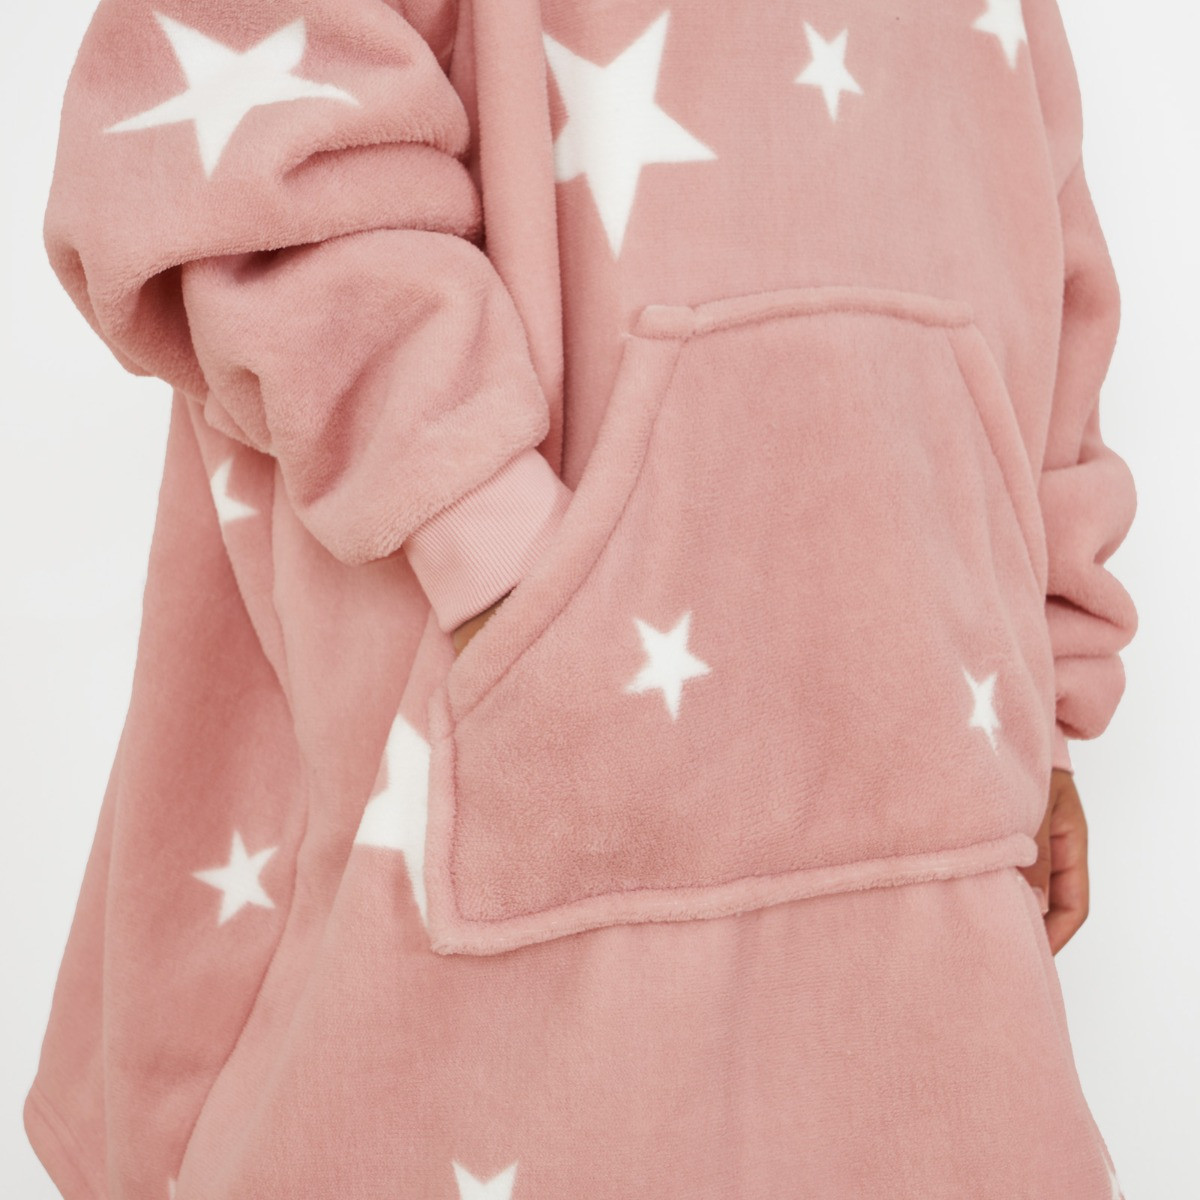 Dreamscene Star Print Hoodie Blanket, Kids - Pink>